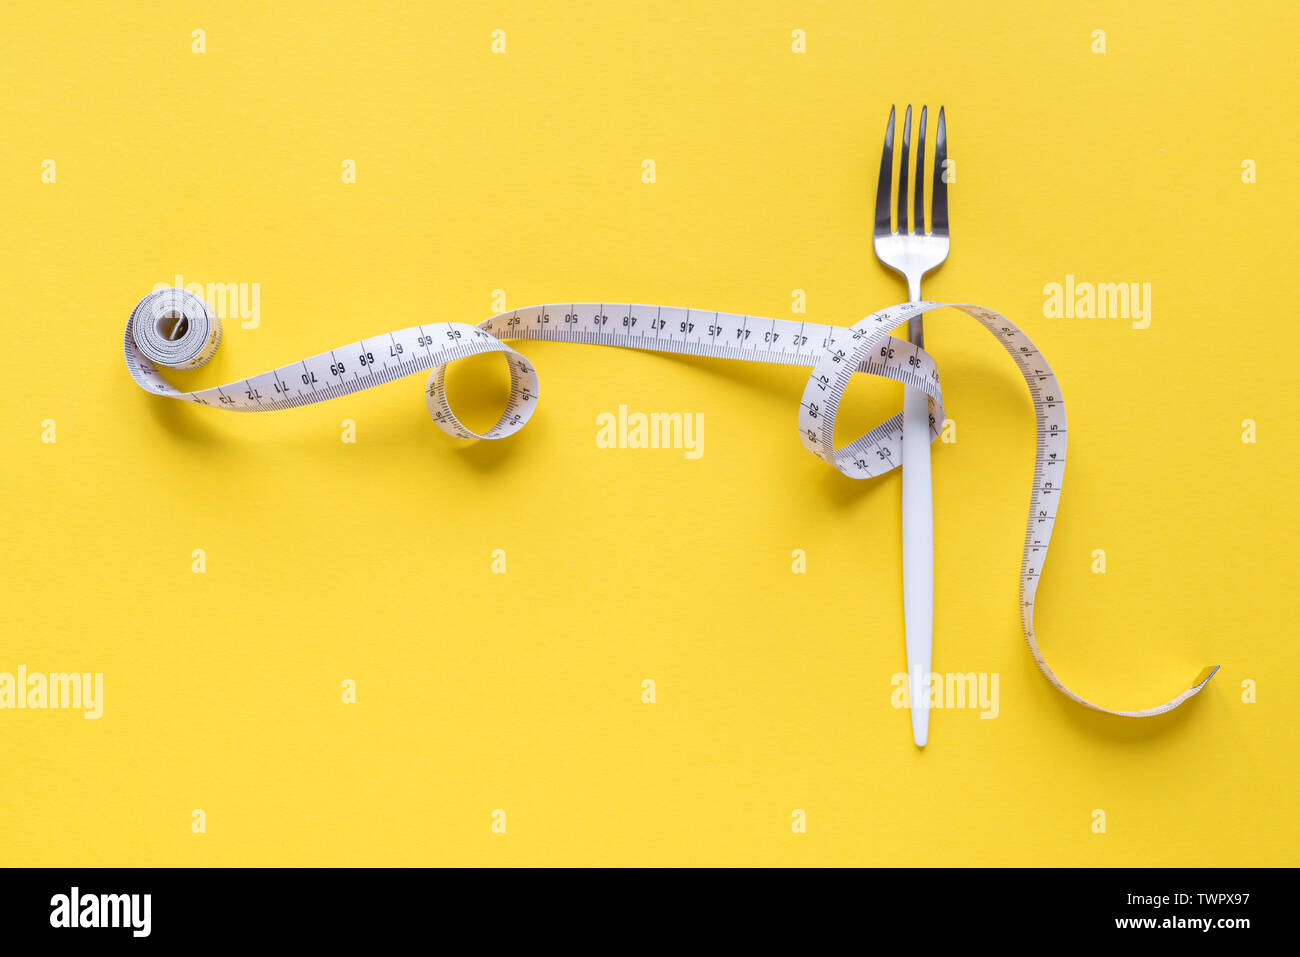 Gabel und Maßband auf gelbem Hintergrund, kopieren. Ernährung, gesunder Lebensstil, Gewichtsverlust Konzept mit weißen Gabel und Maßband. Stockfoto